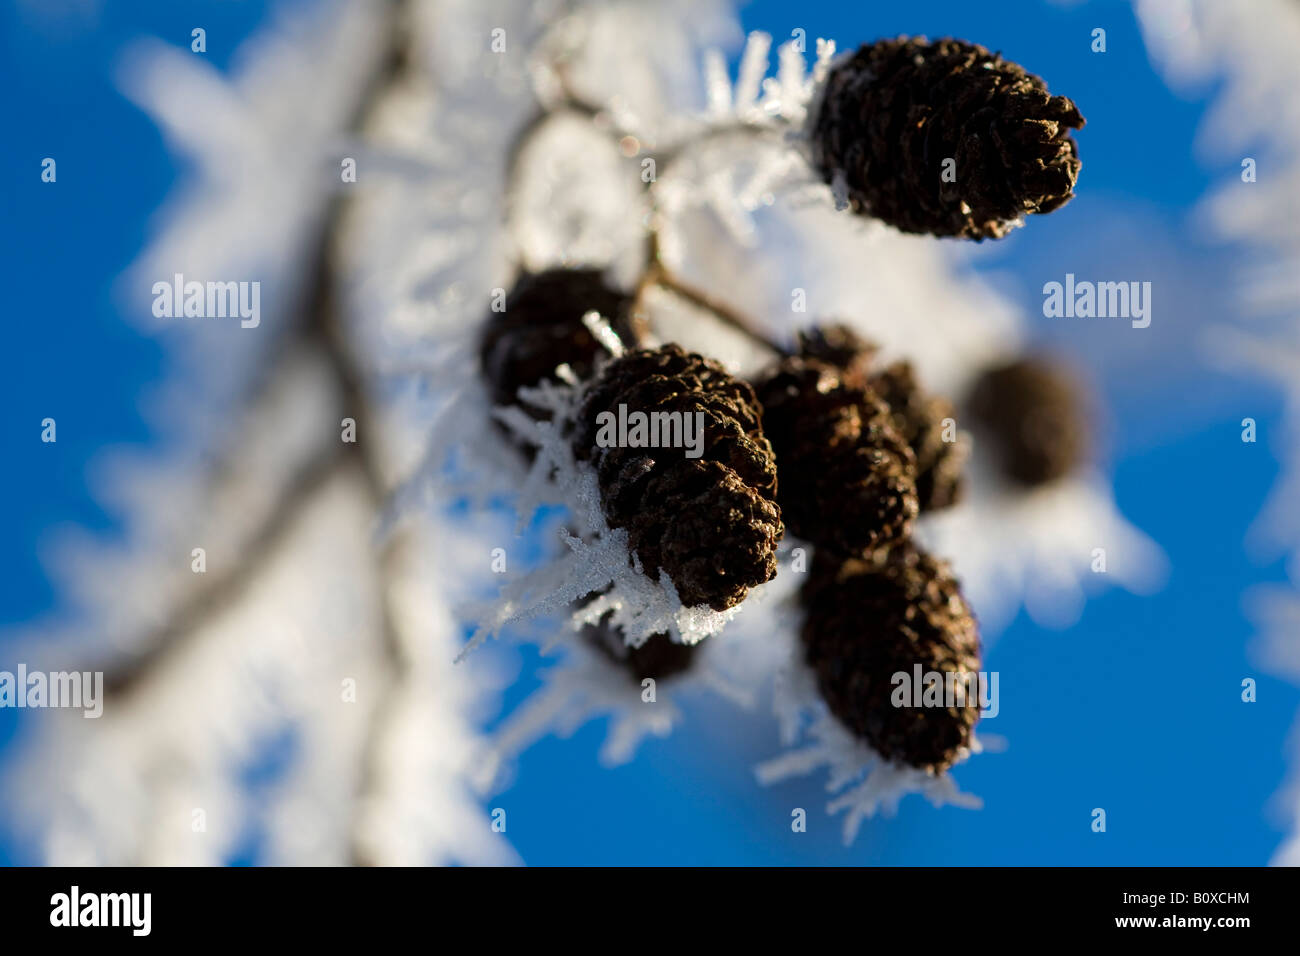 common alder, black alder, European alder (Alnus glutinosa), hoar frost on cones in winter, Germany, Saxony, Vogtlaendische Sch Stock Photo